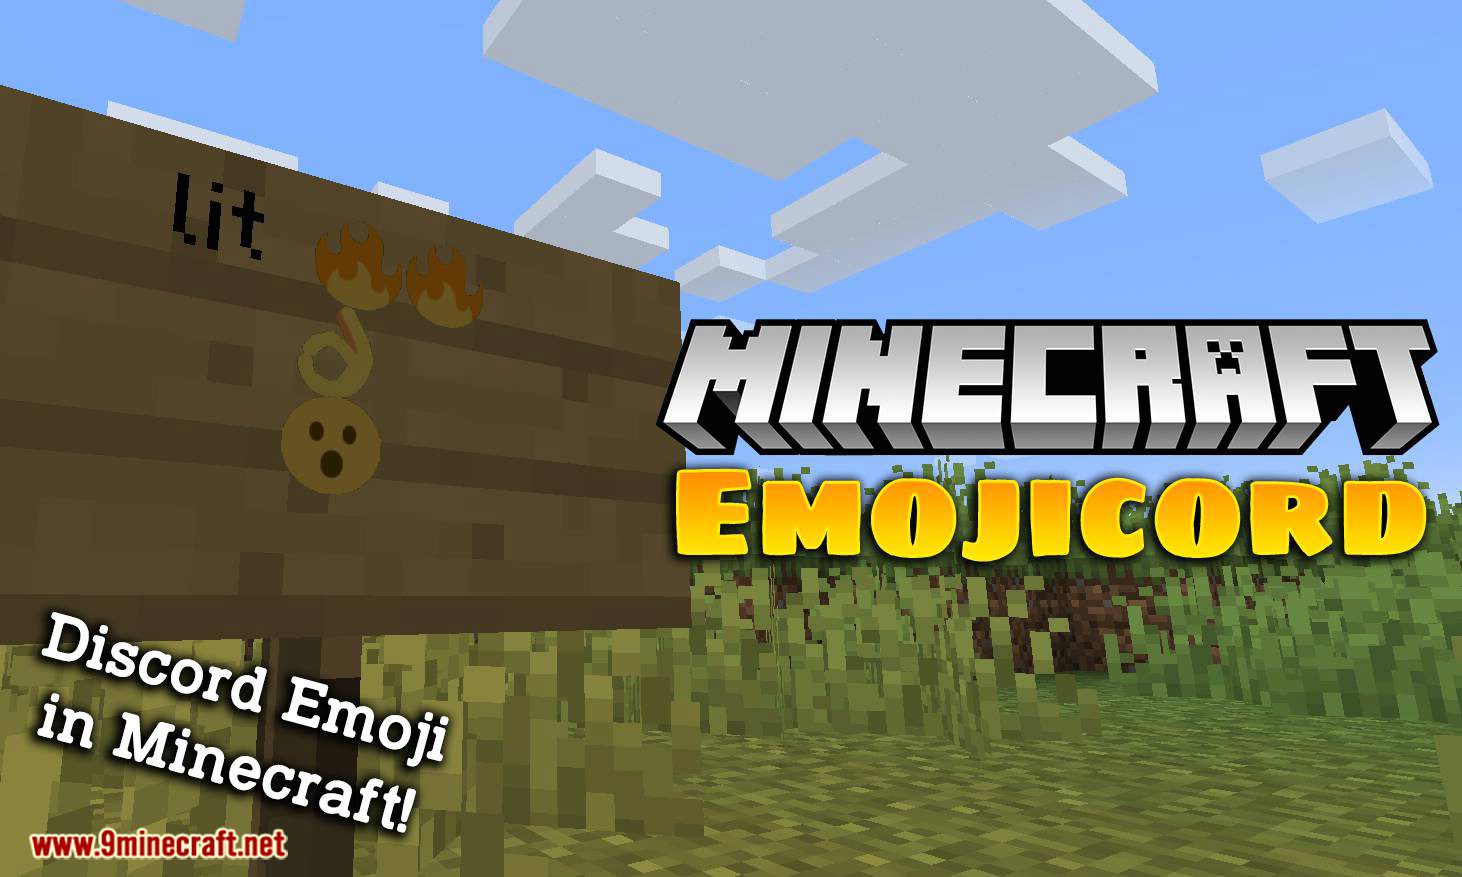 Emoji for minecraft chat